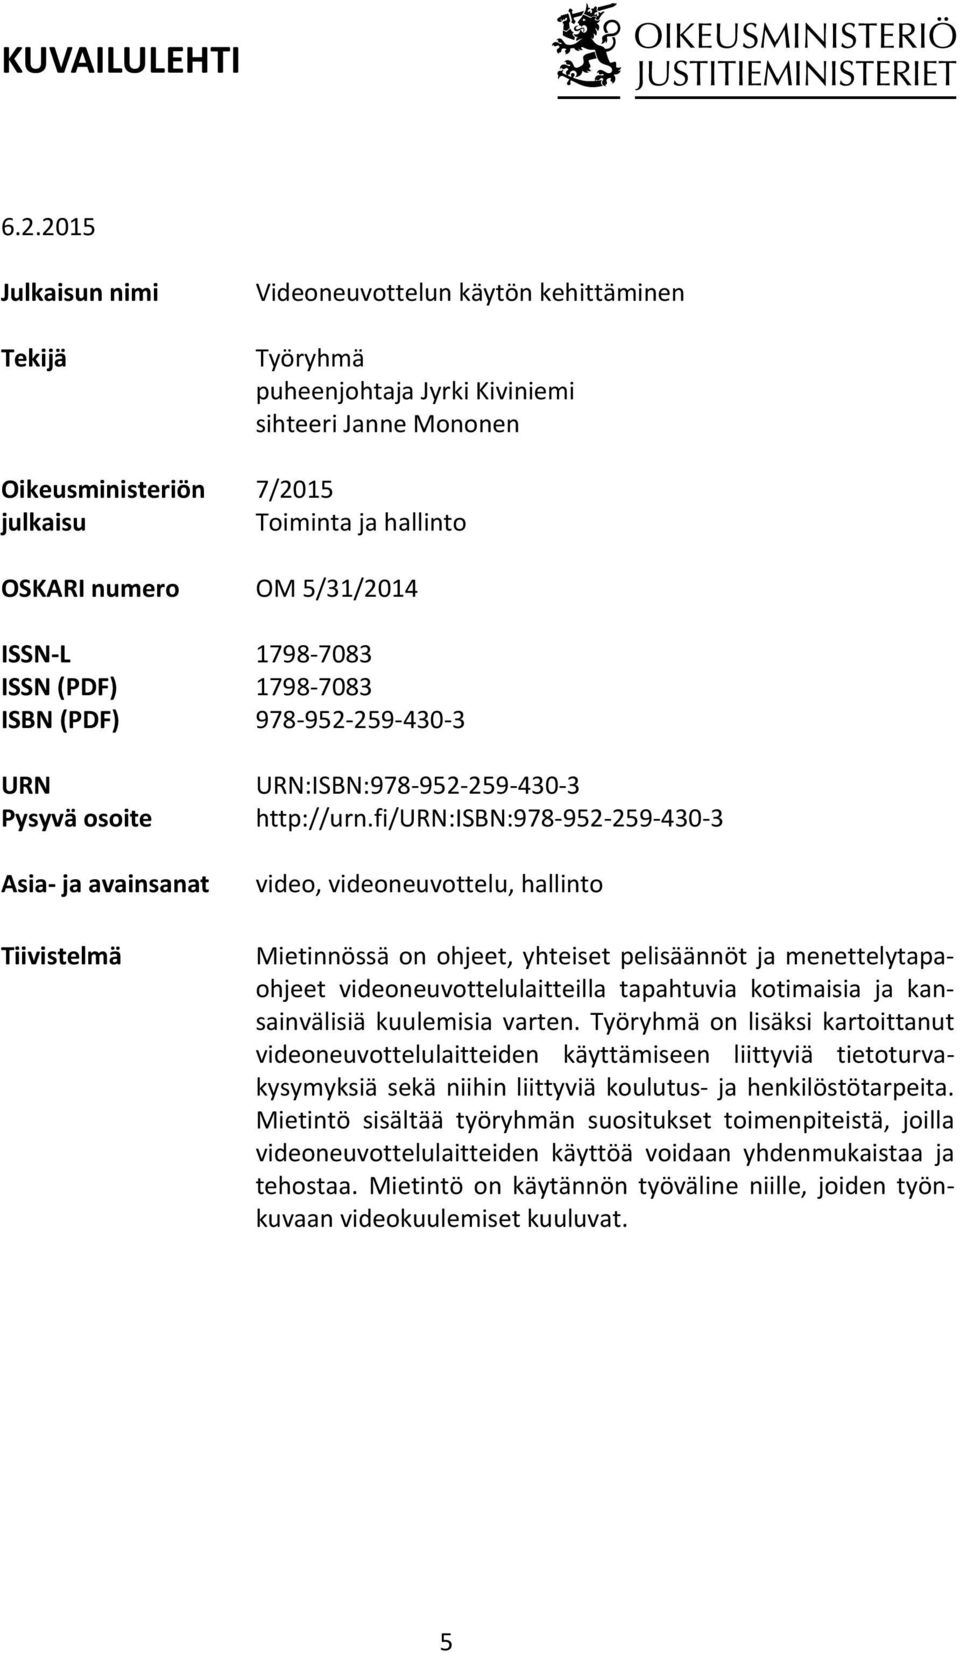 puheenjohtaja Jyrki Kiviniemi sihteeri Janne Mononen 7/2015 Toiminta ja hallinto OM 5/31/2014 1798-7083 1798-7083 978-952- 259-430- 3 URN:ISBN:978-952- 259-430- 3 http://urn.